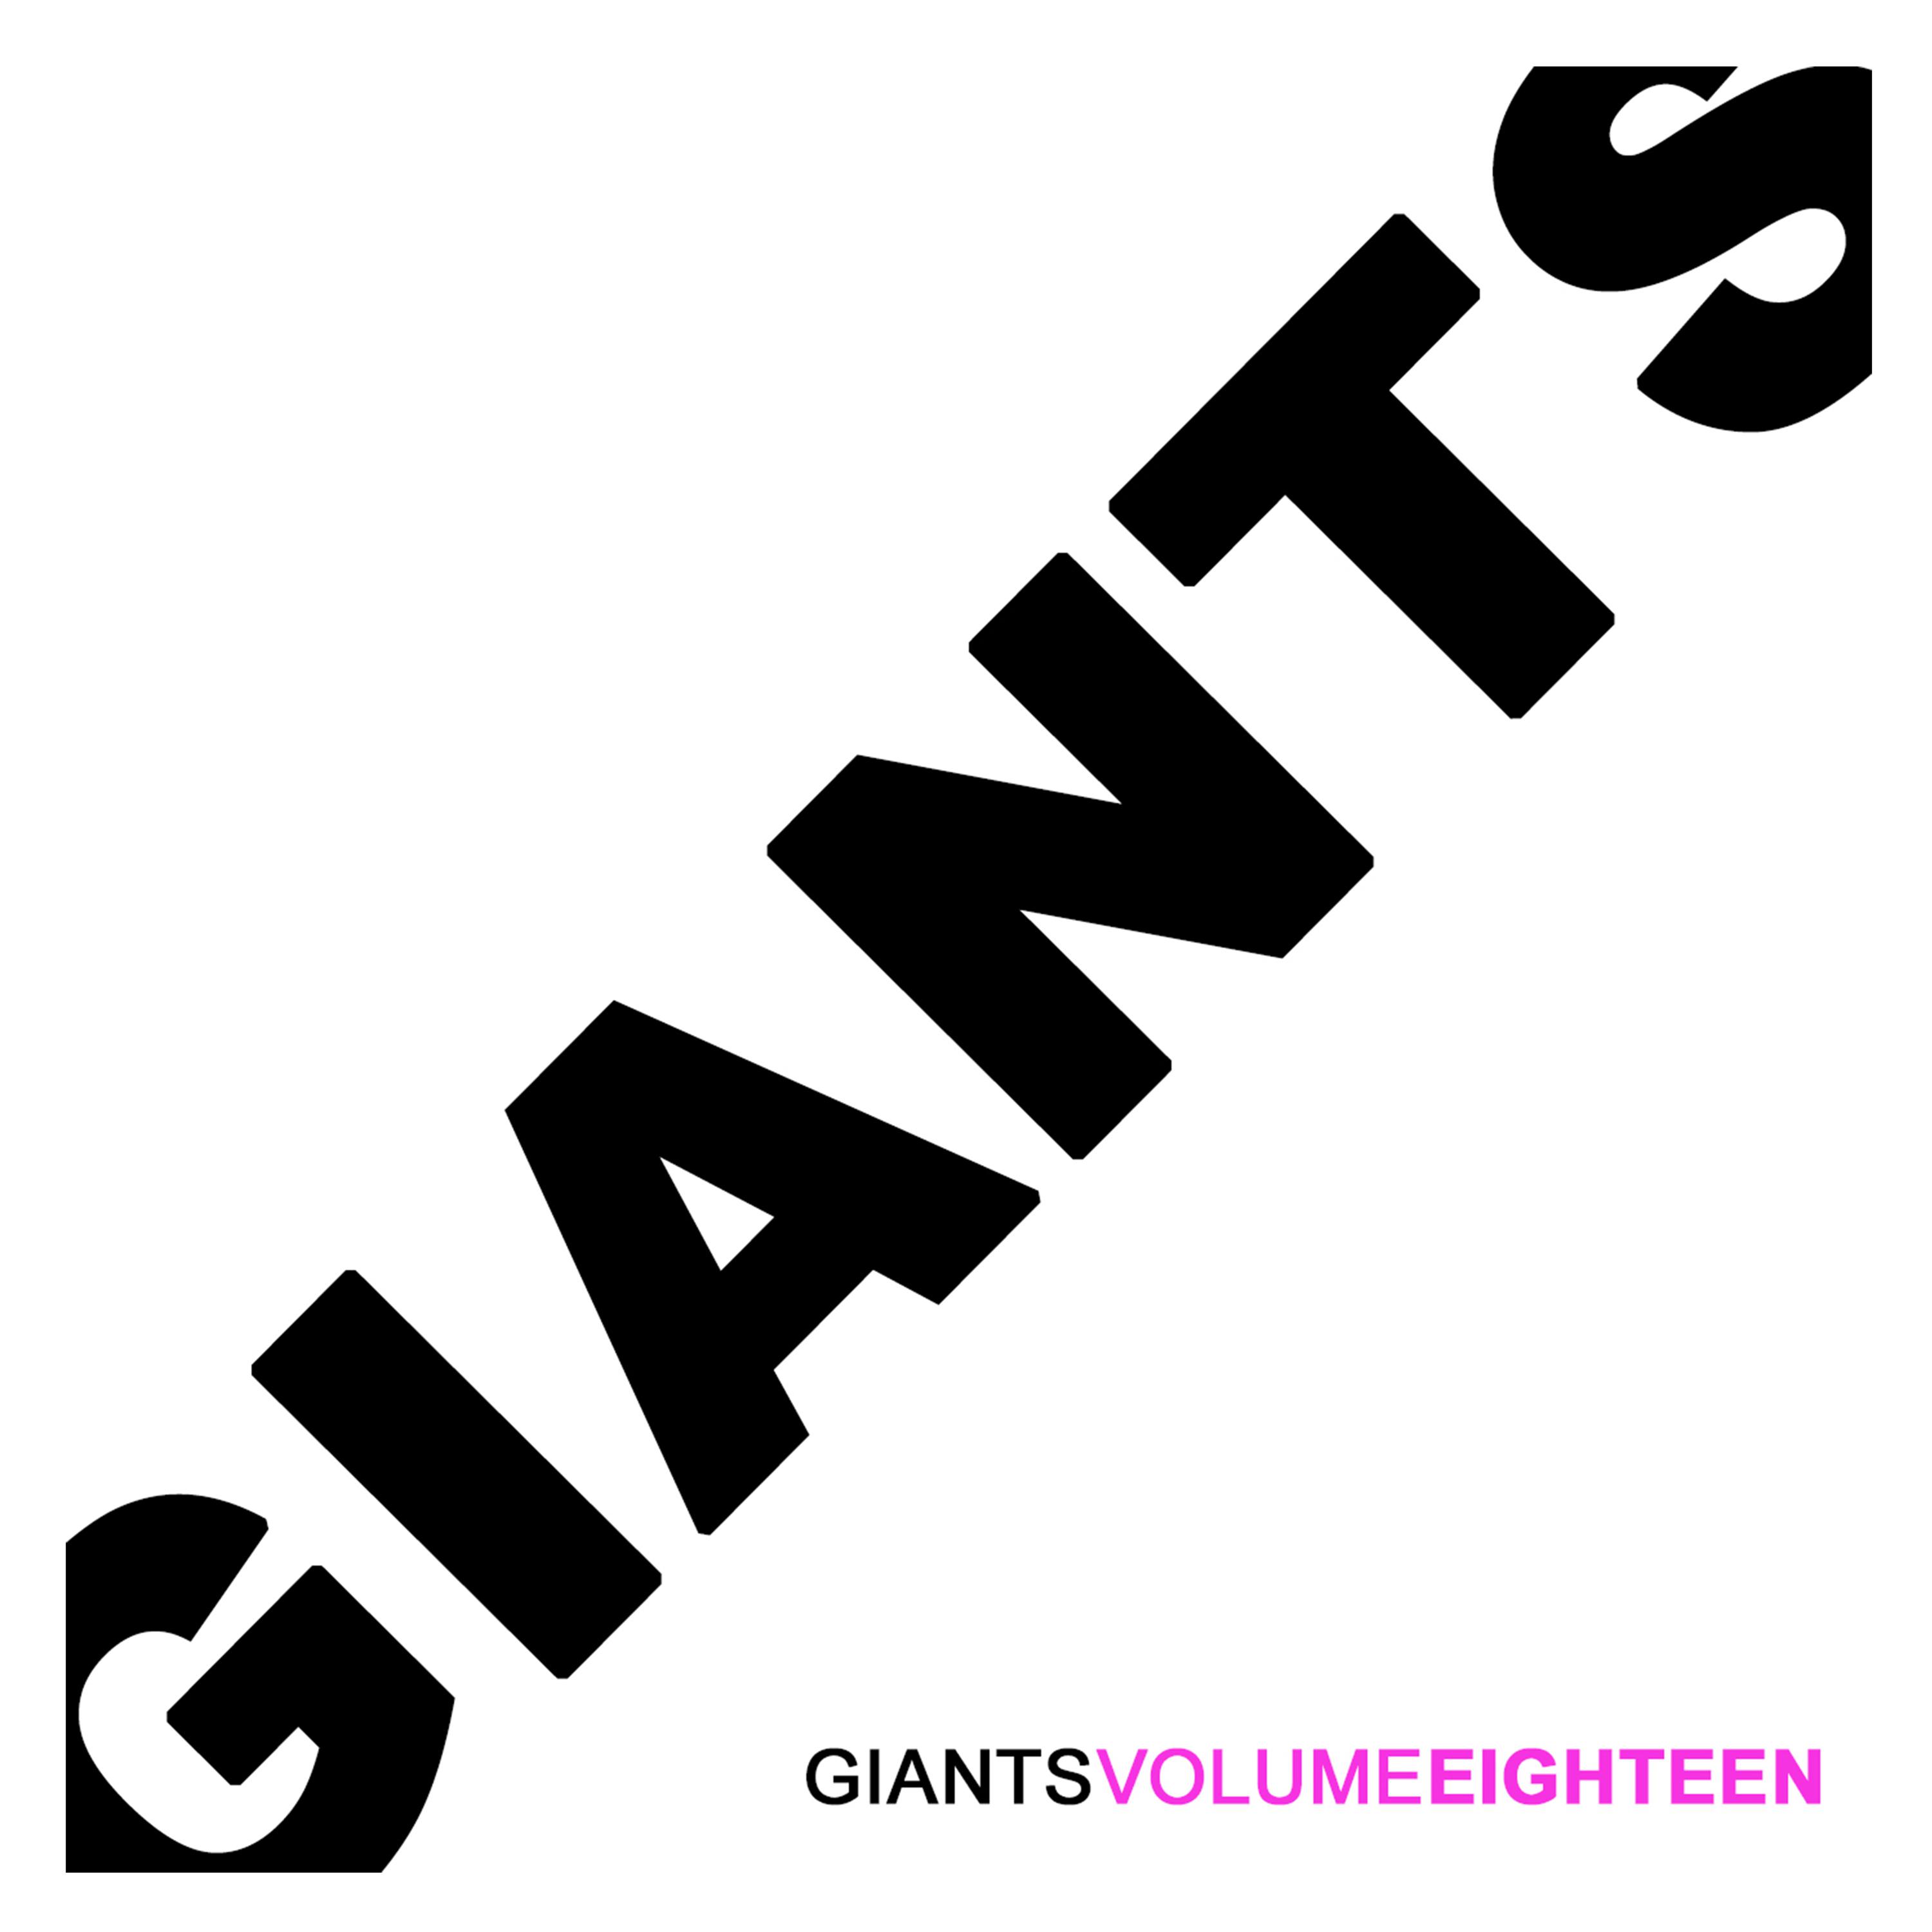 Giants, Vol. 18